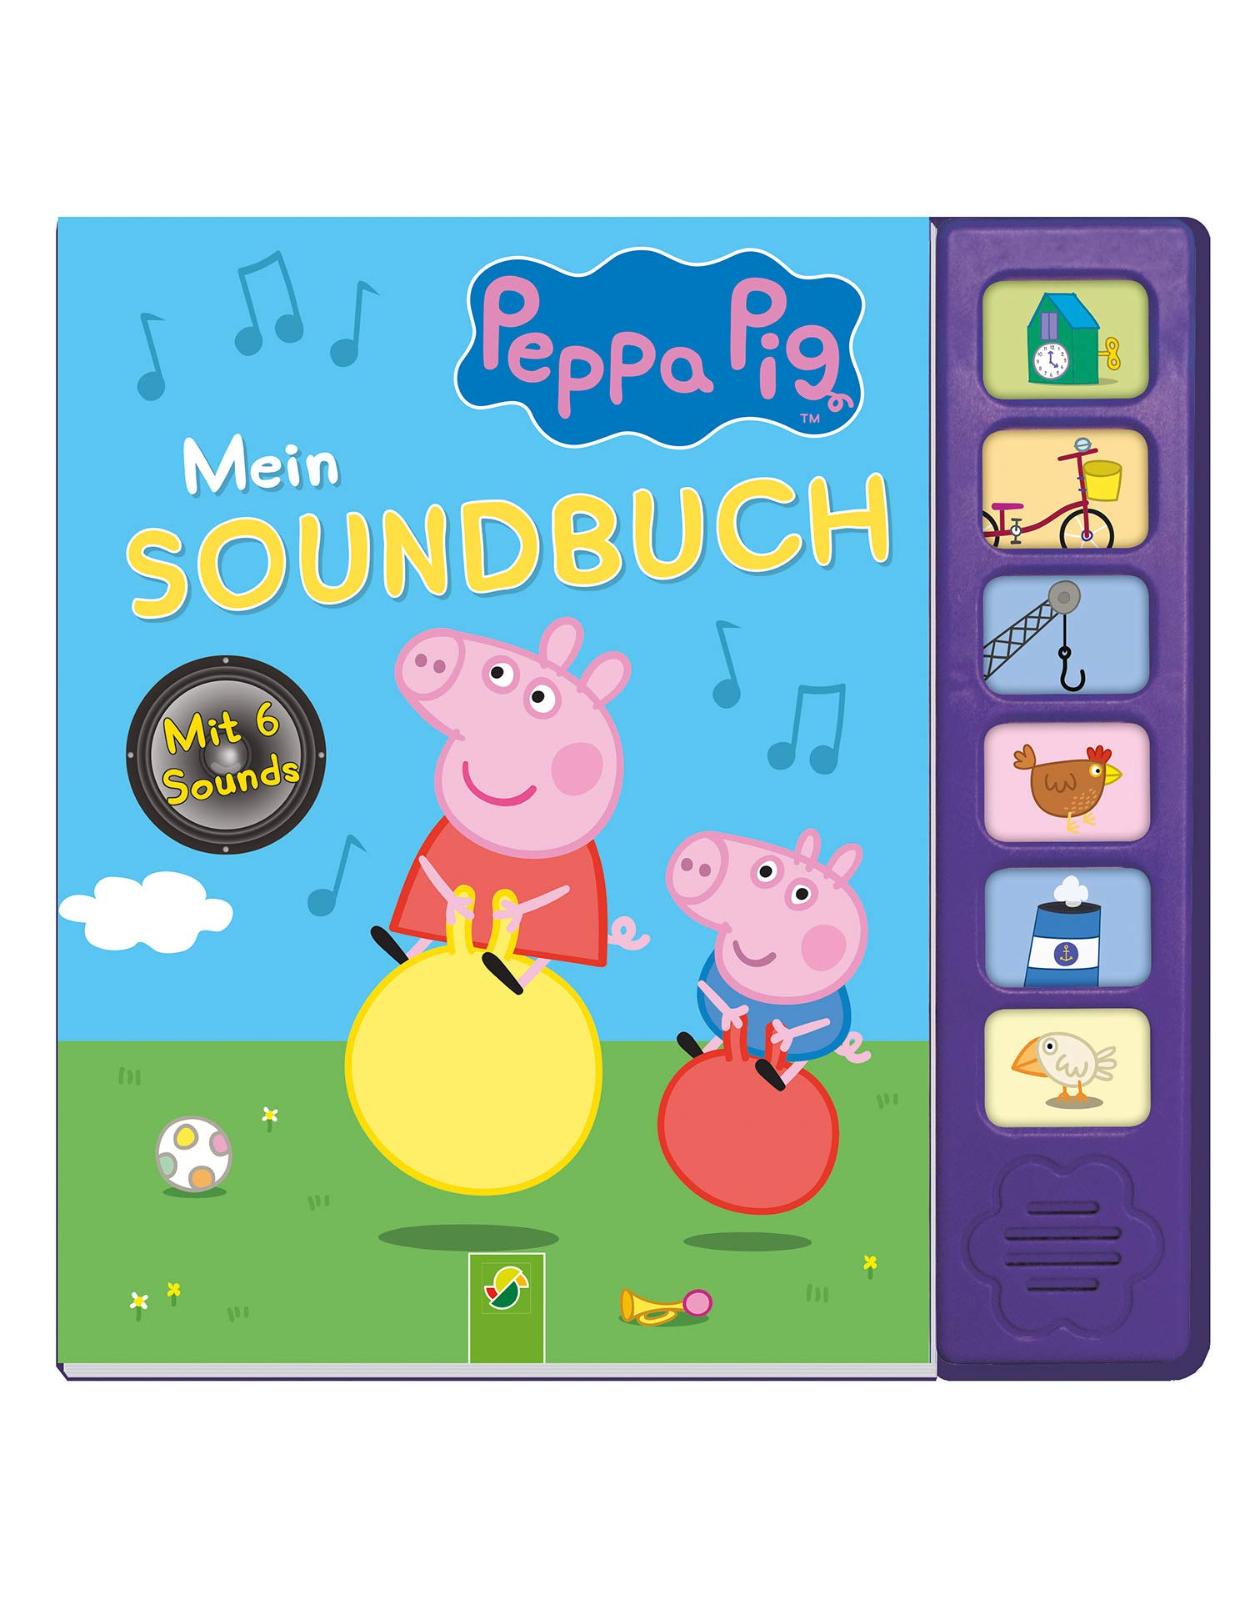 Peppa Pig Mein Soundbuch: Mit 6 Sounds 